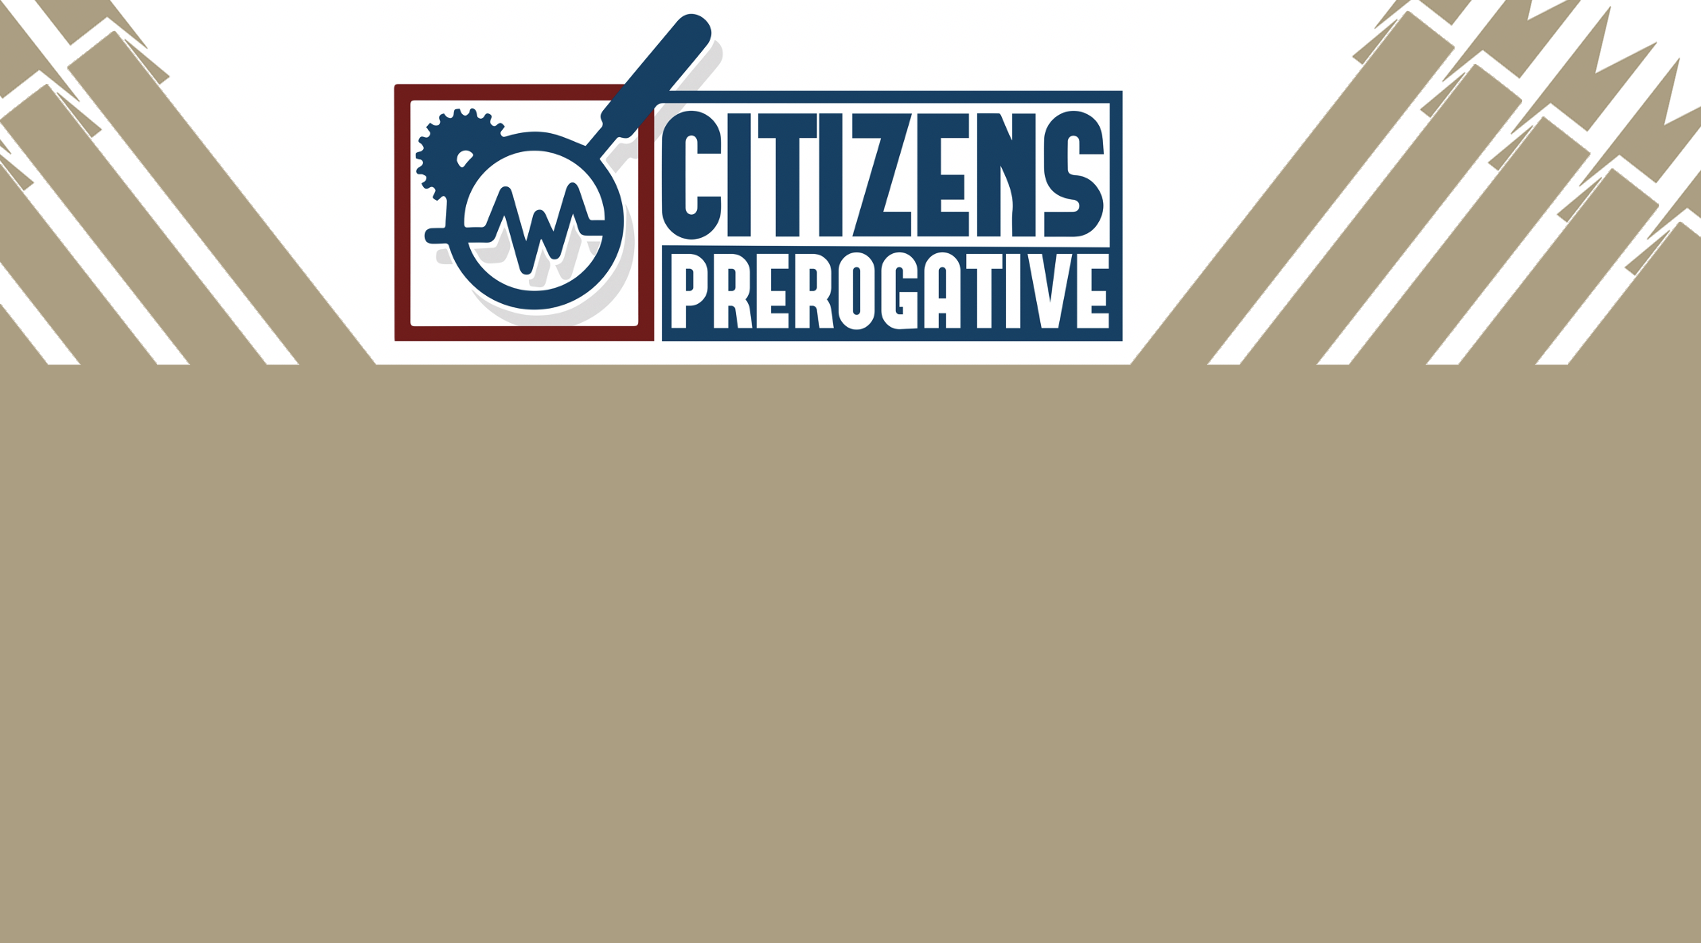 Citizens Prerogative